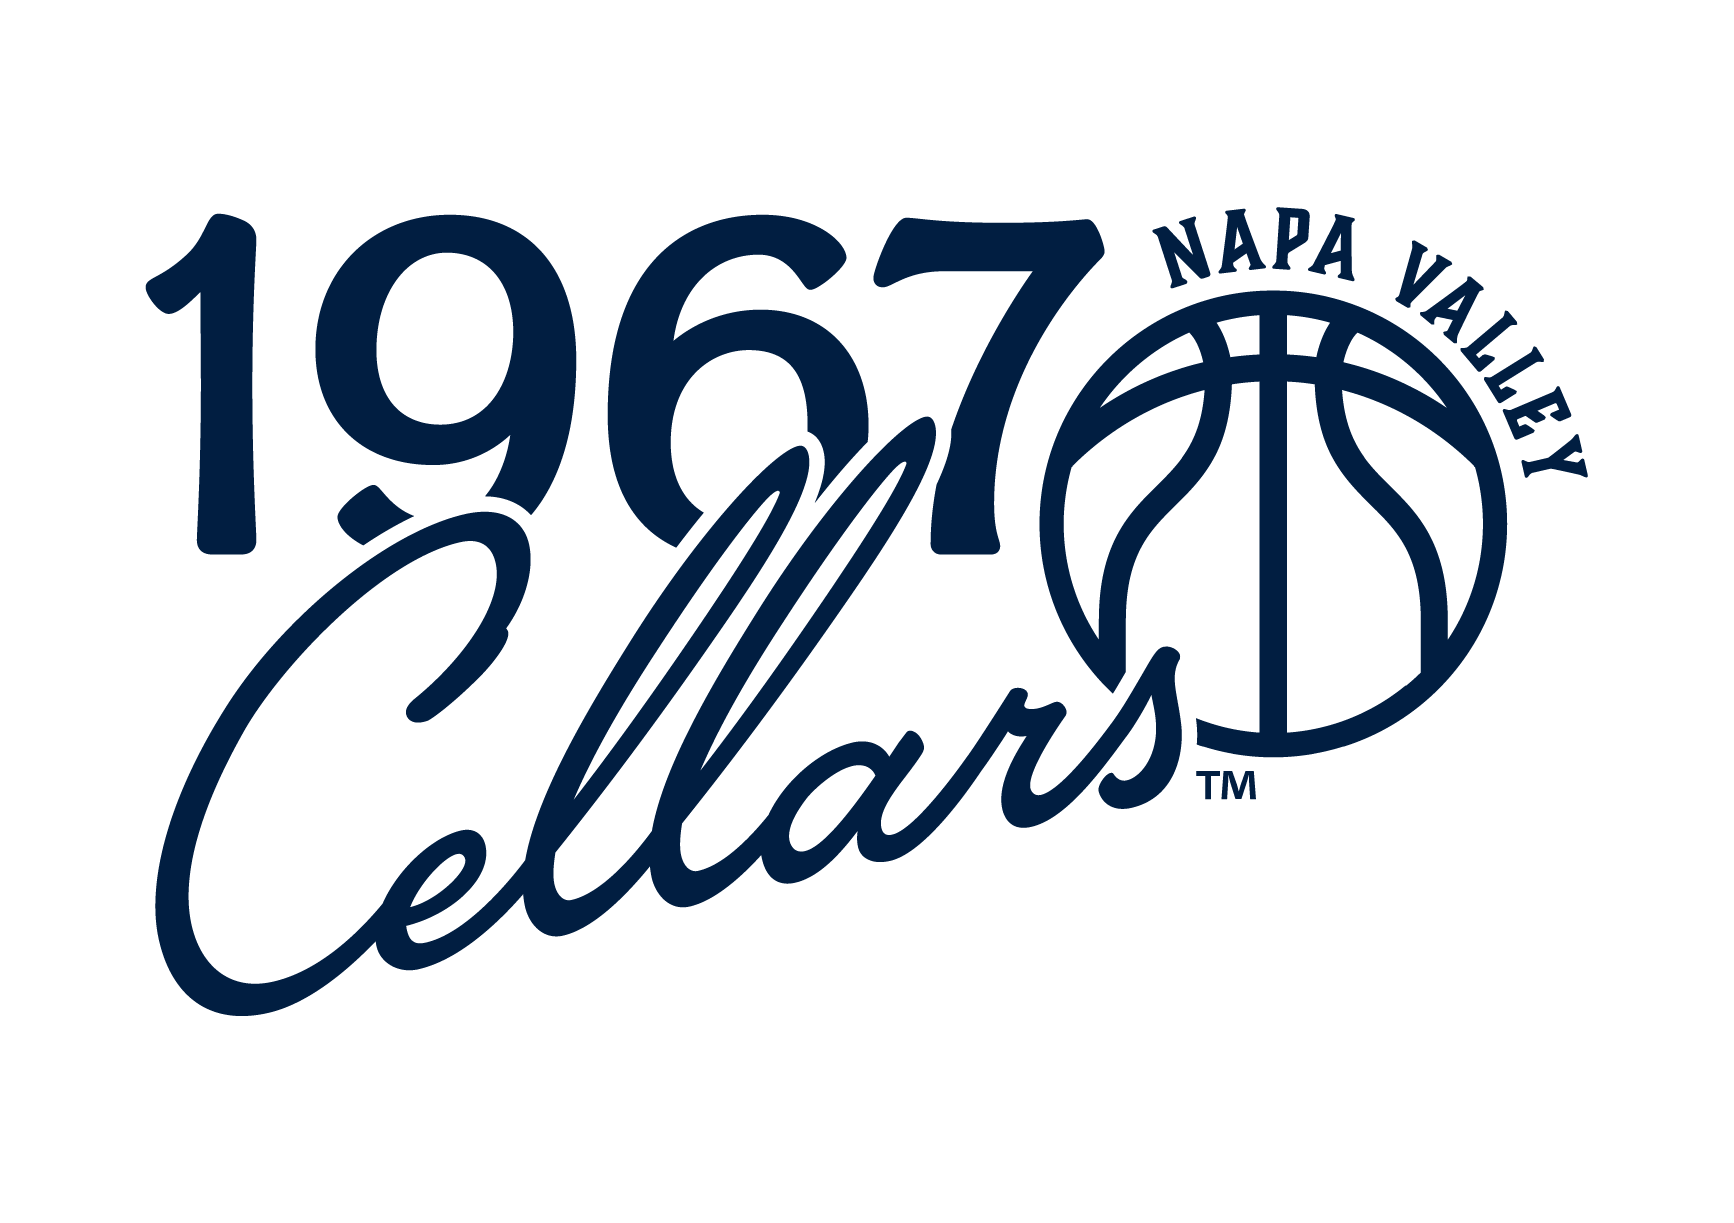 1967 Cellars Napa Valley